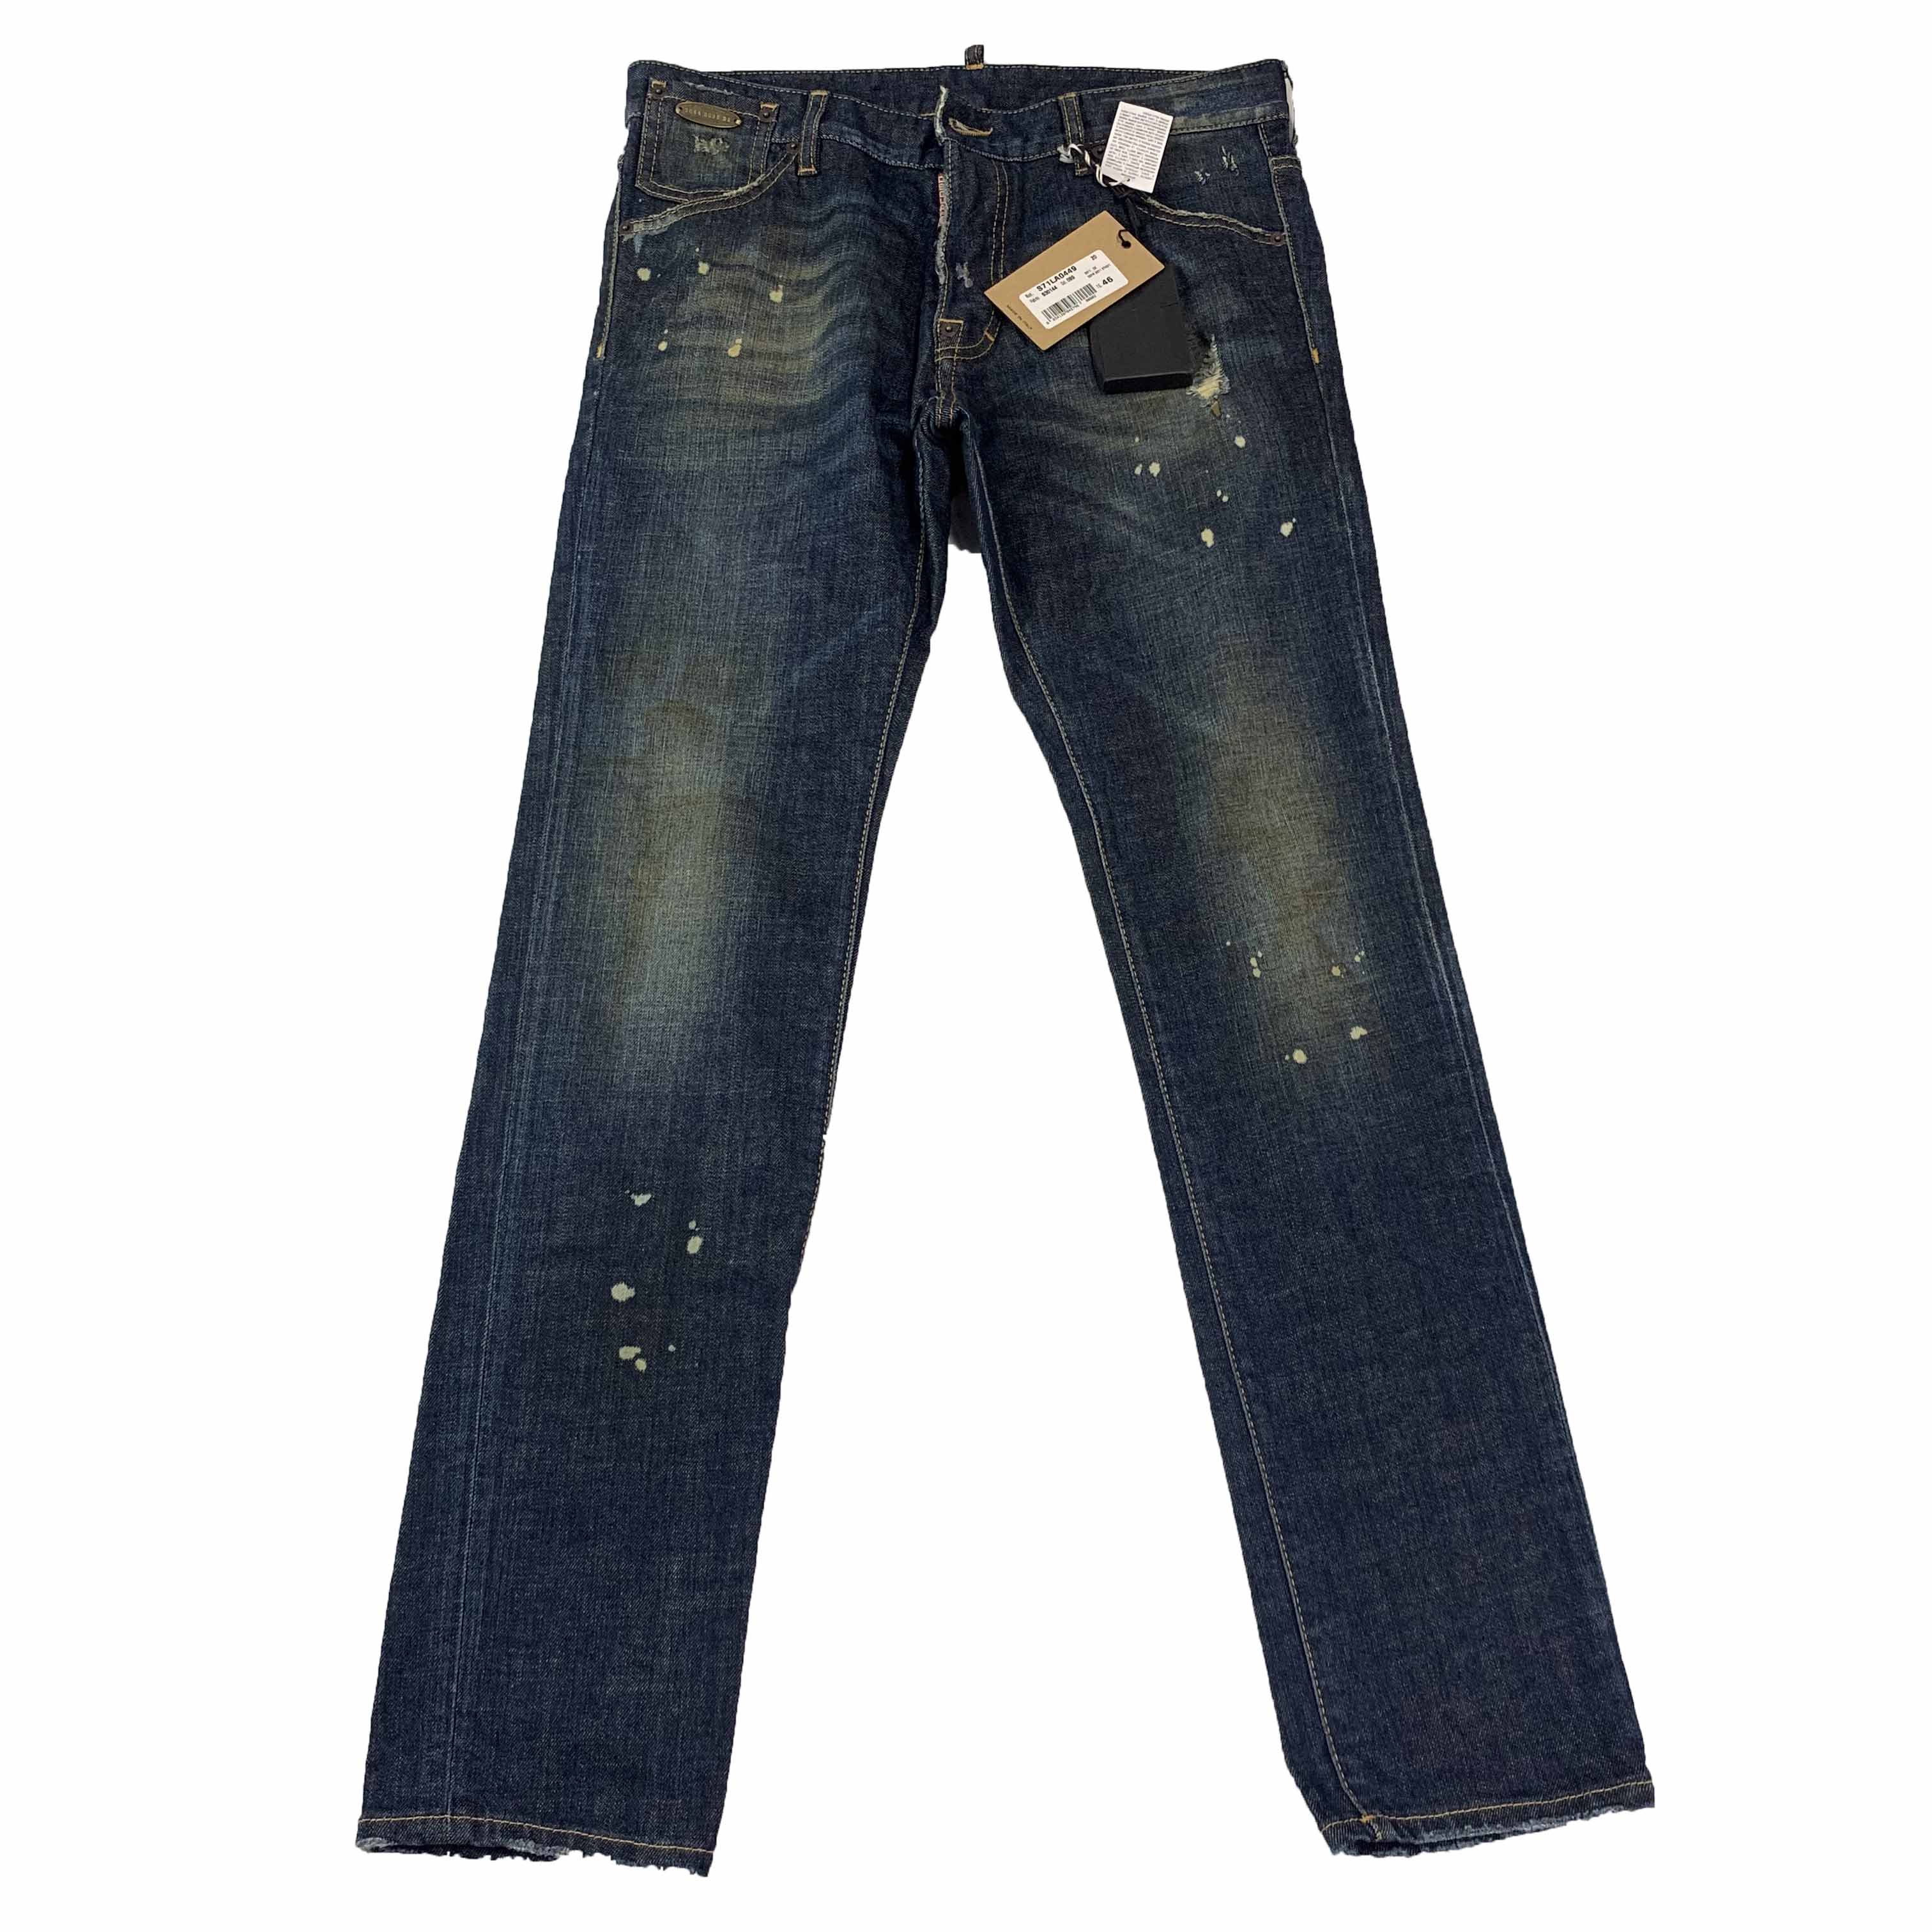 [DSQUARED2] Painted Dark Blue Jeans (S71LA0449) - Size 46